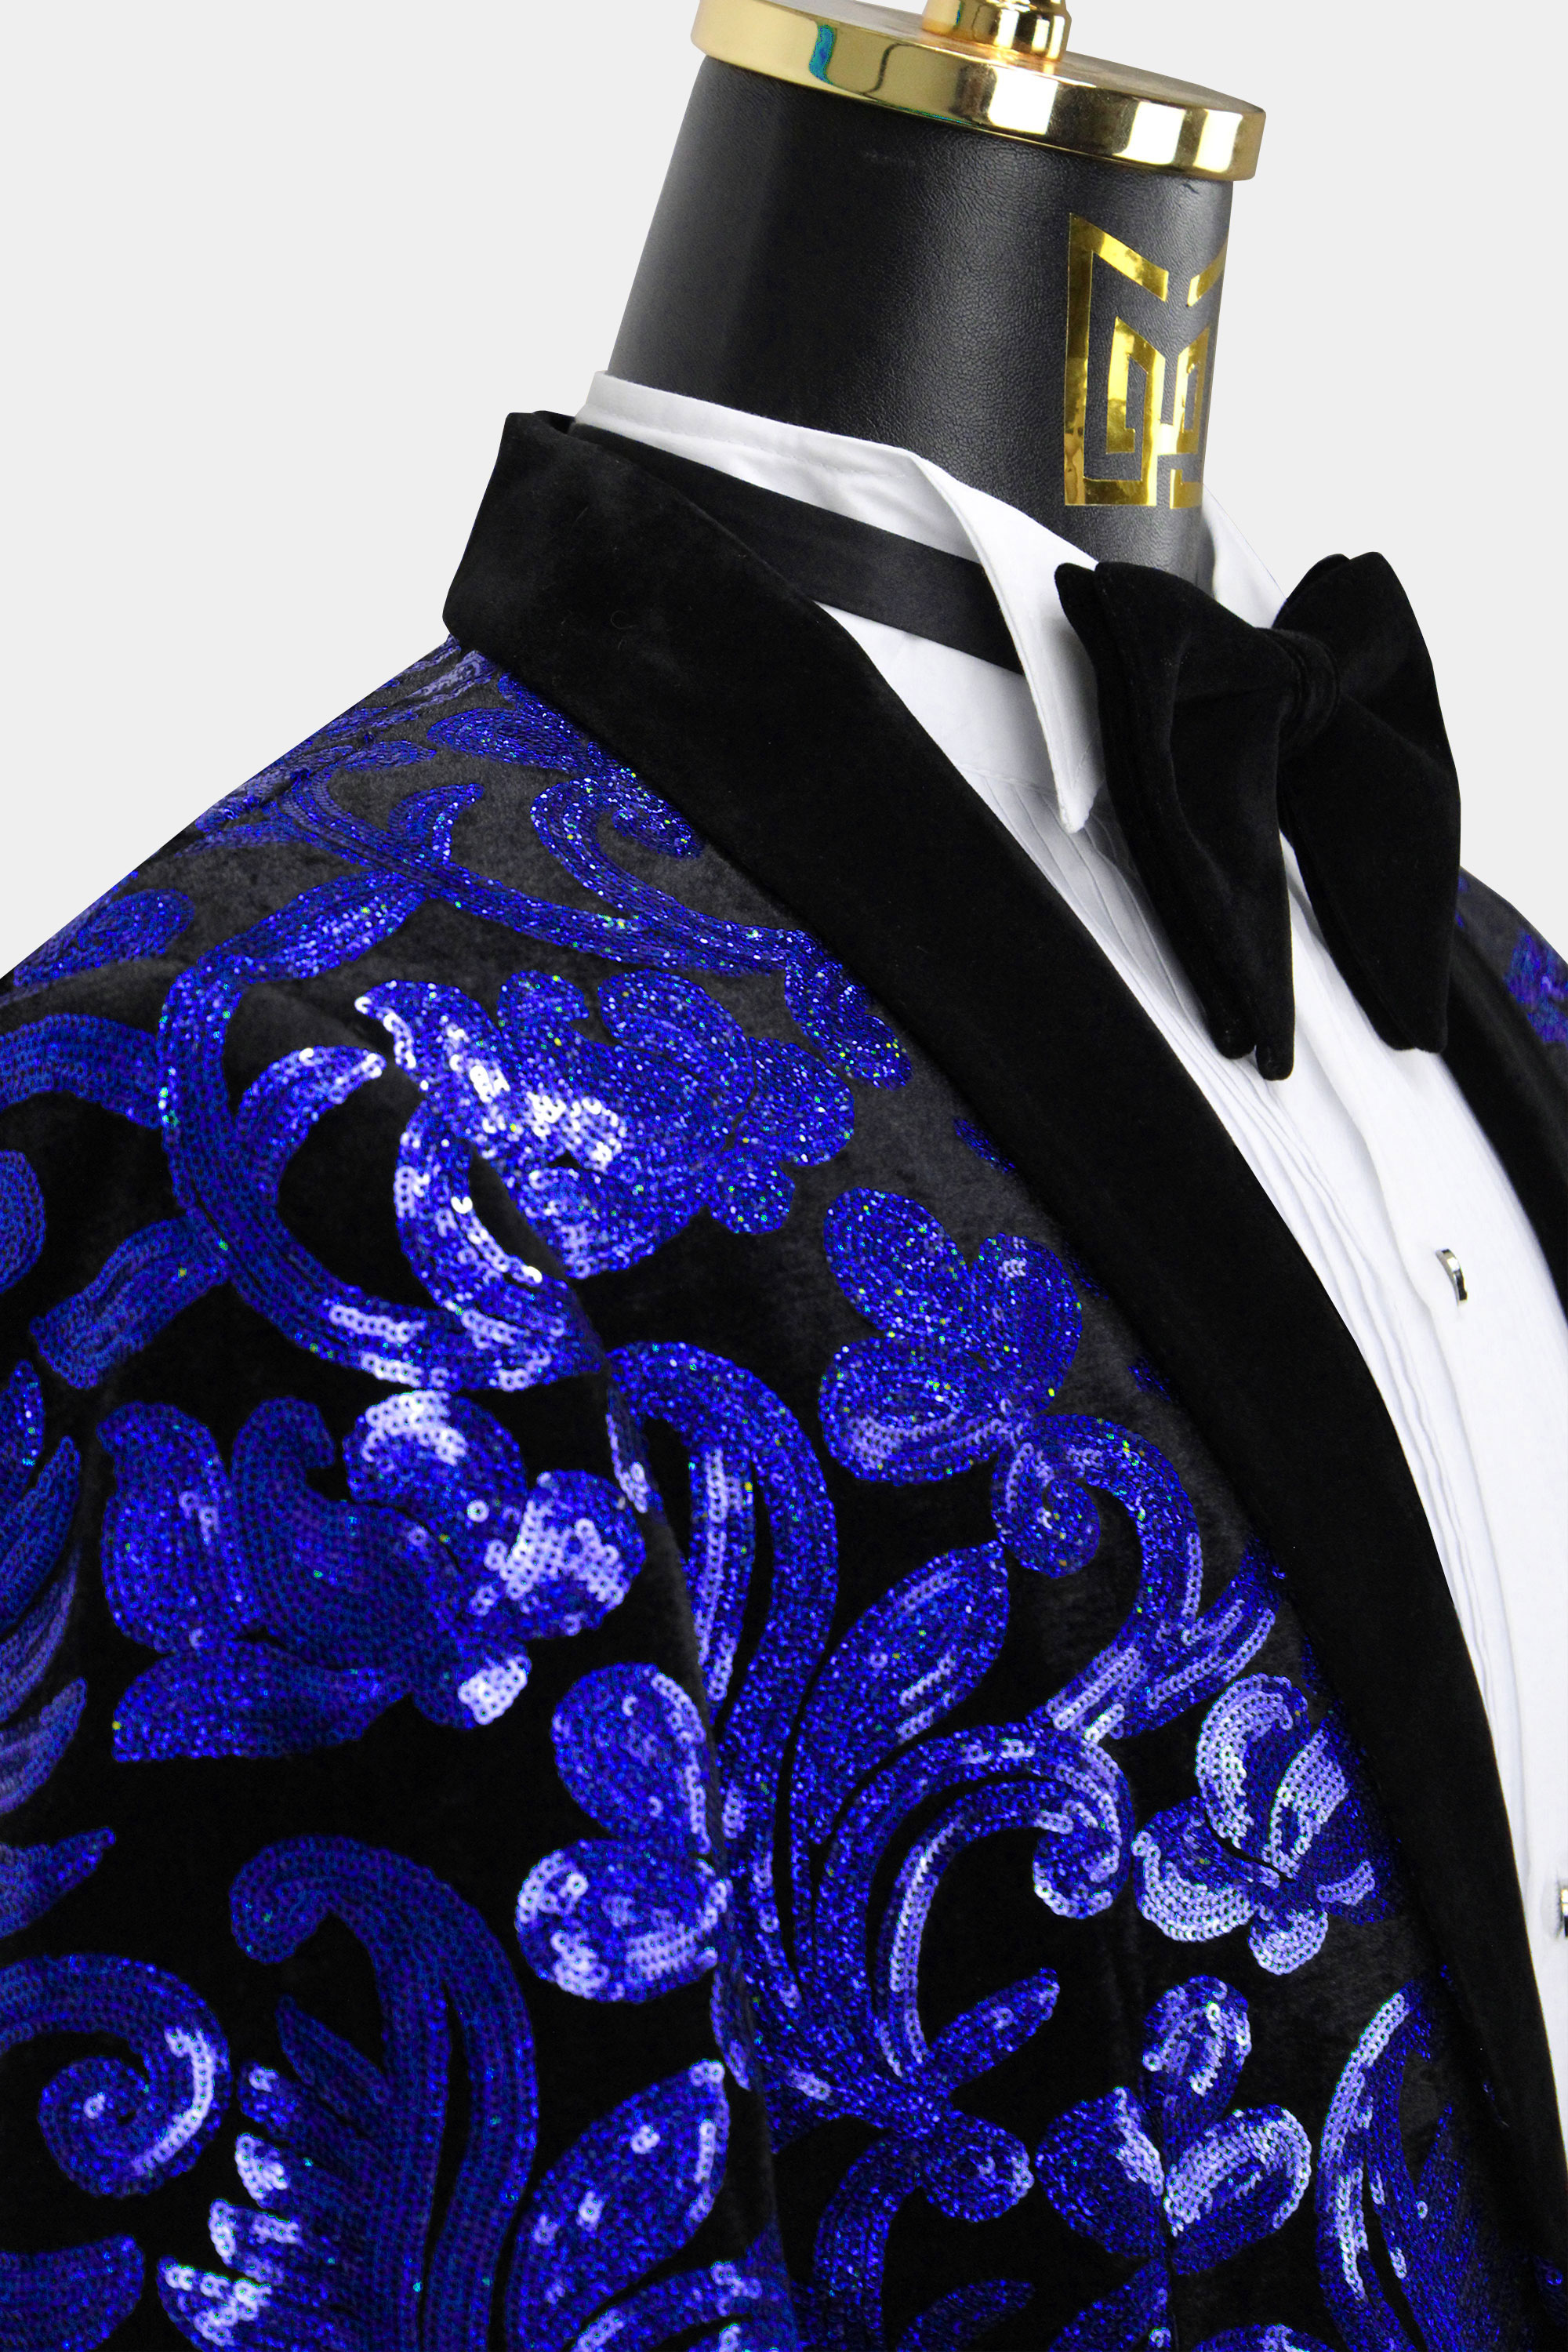 Royal-Blue-and-Black-Velvet-Tuxedo-Jacket-from-Gentlemansguru.com